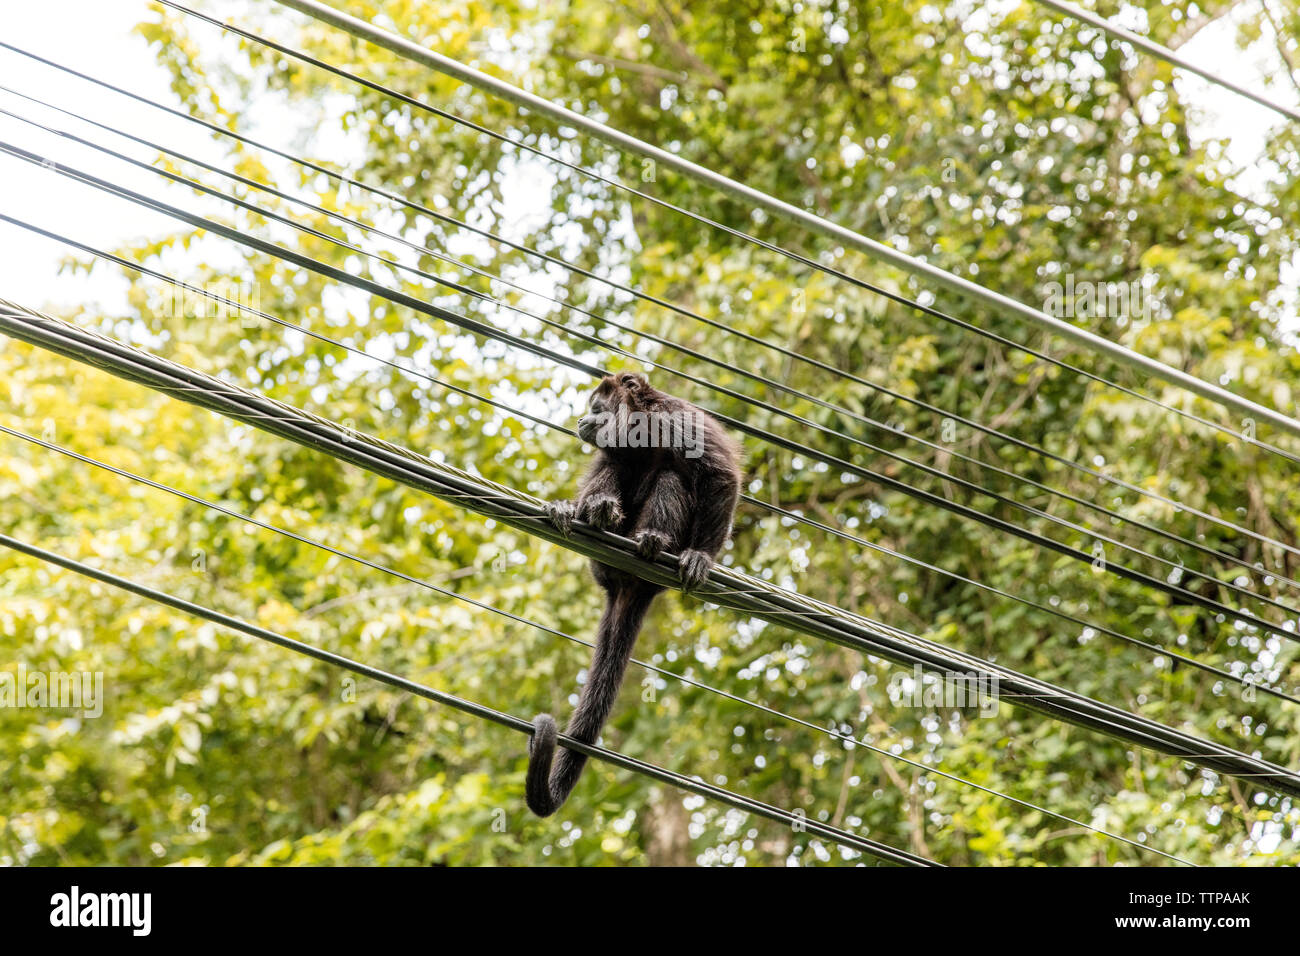 Low angle view of monkey sitting sur lignes électriques contre l'arbre Banque D'Images